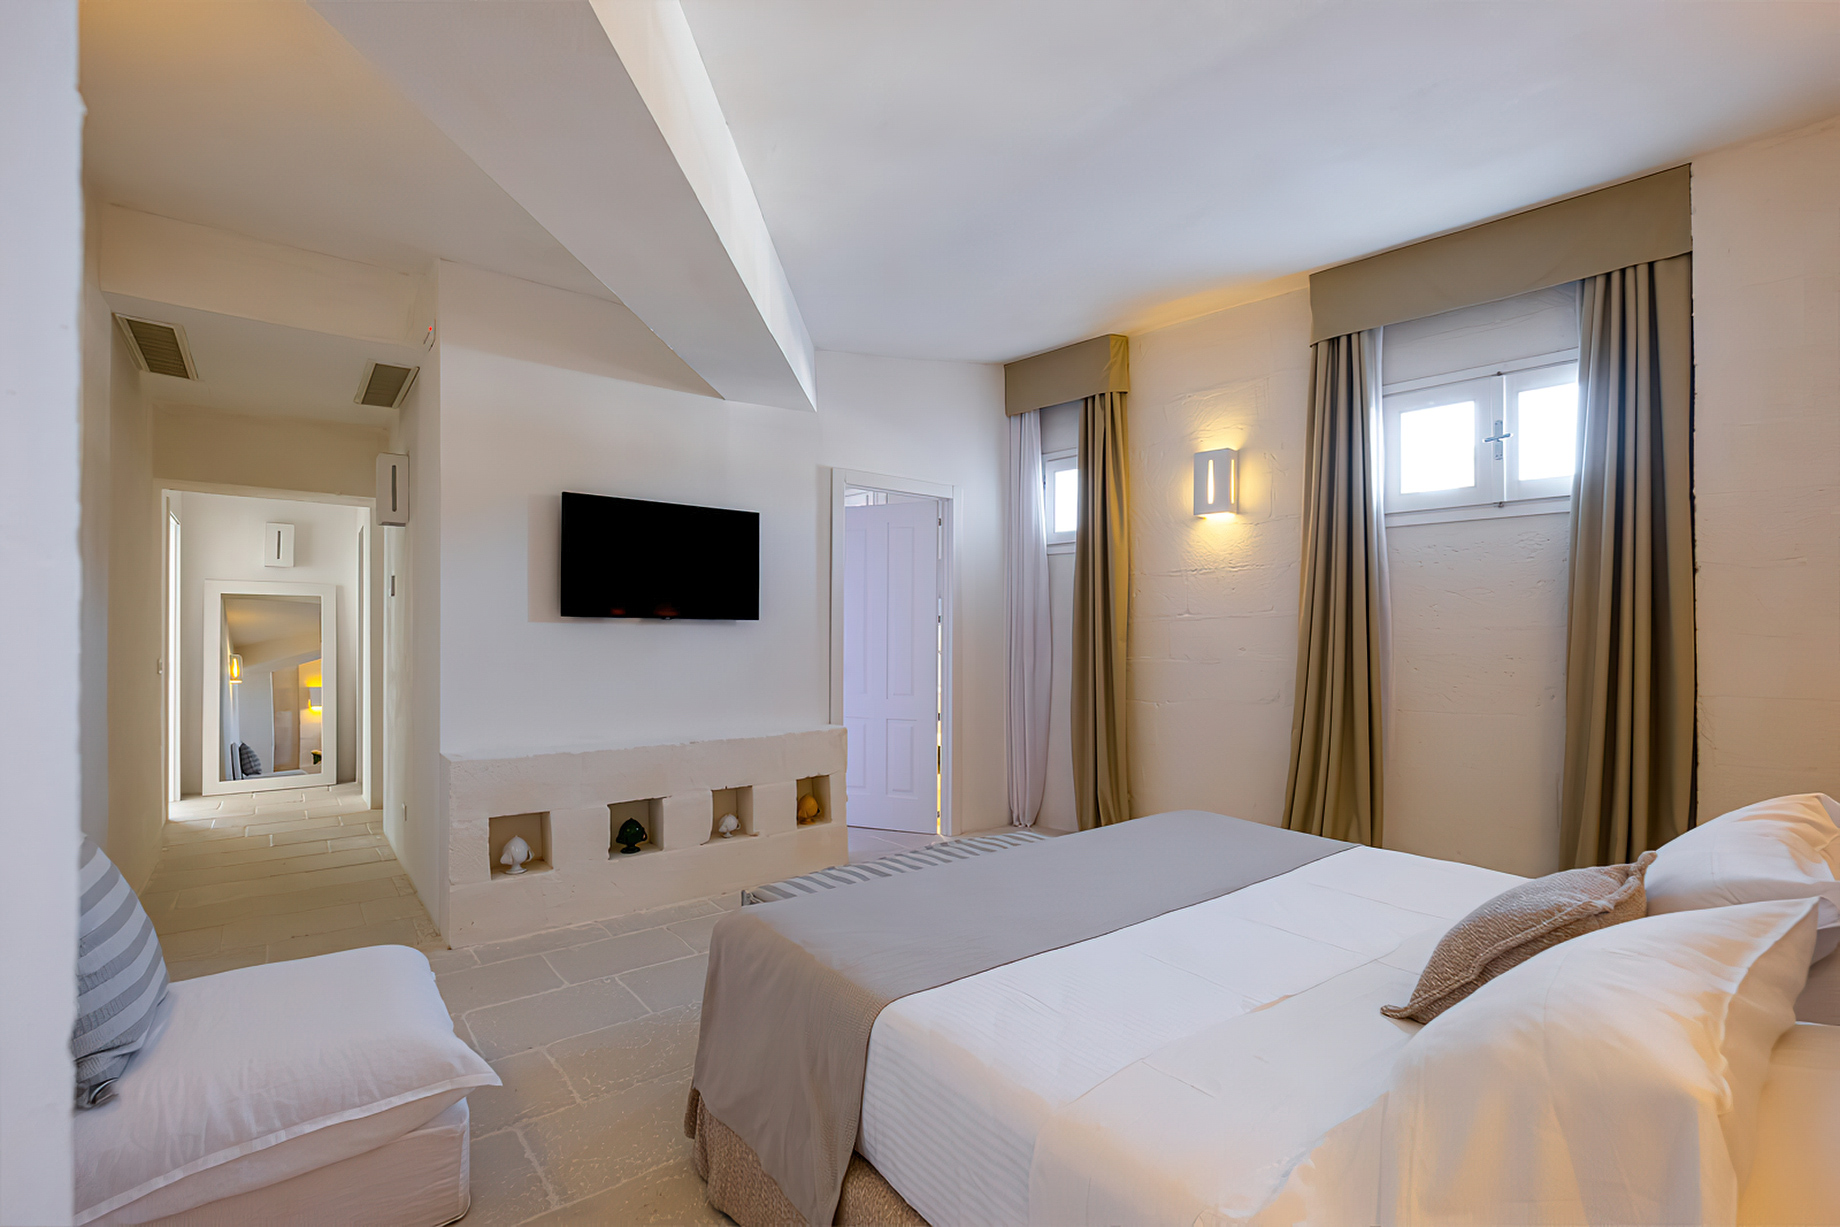 Baglioni Masseria Muzza Hotel – Puglia, Italy – Executive Suite Bedroom